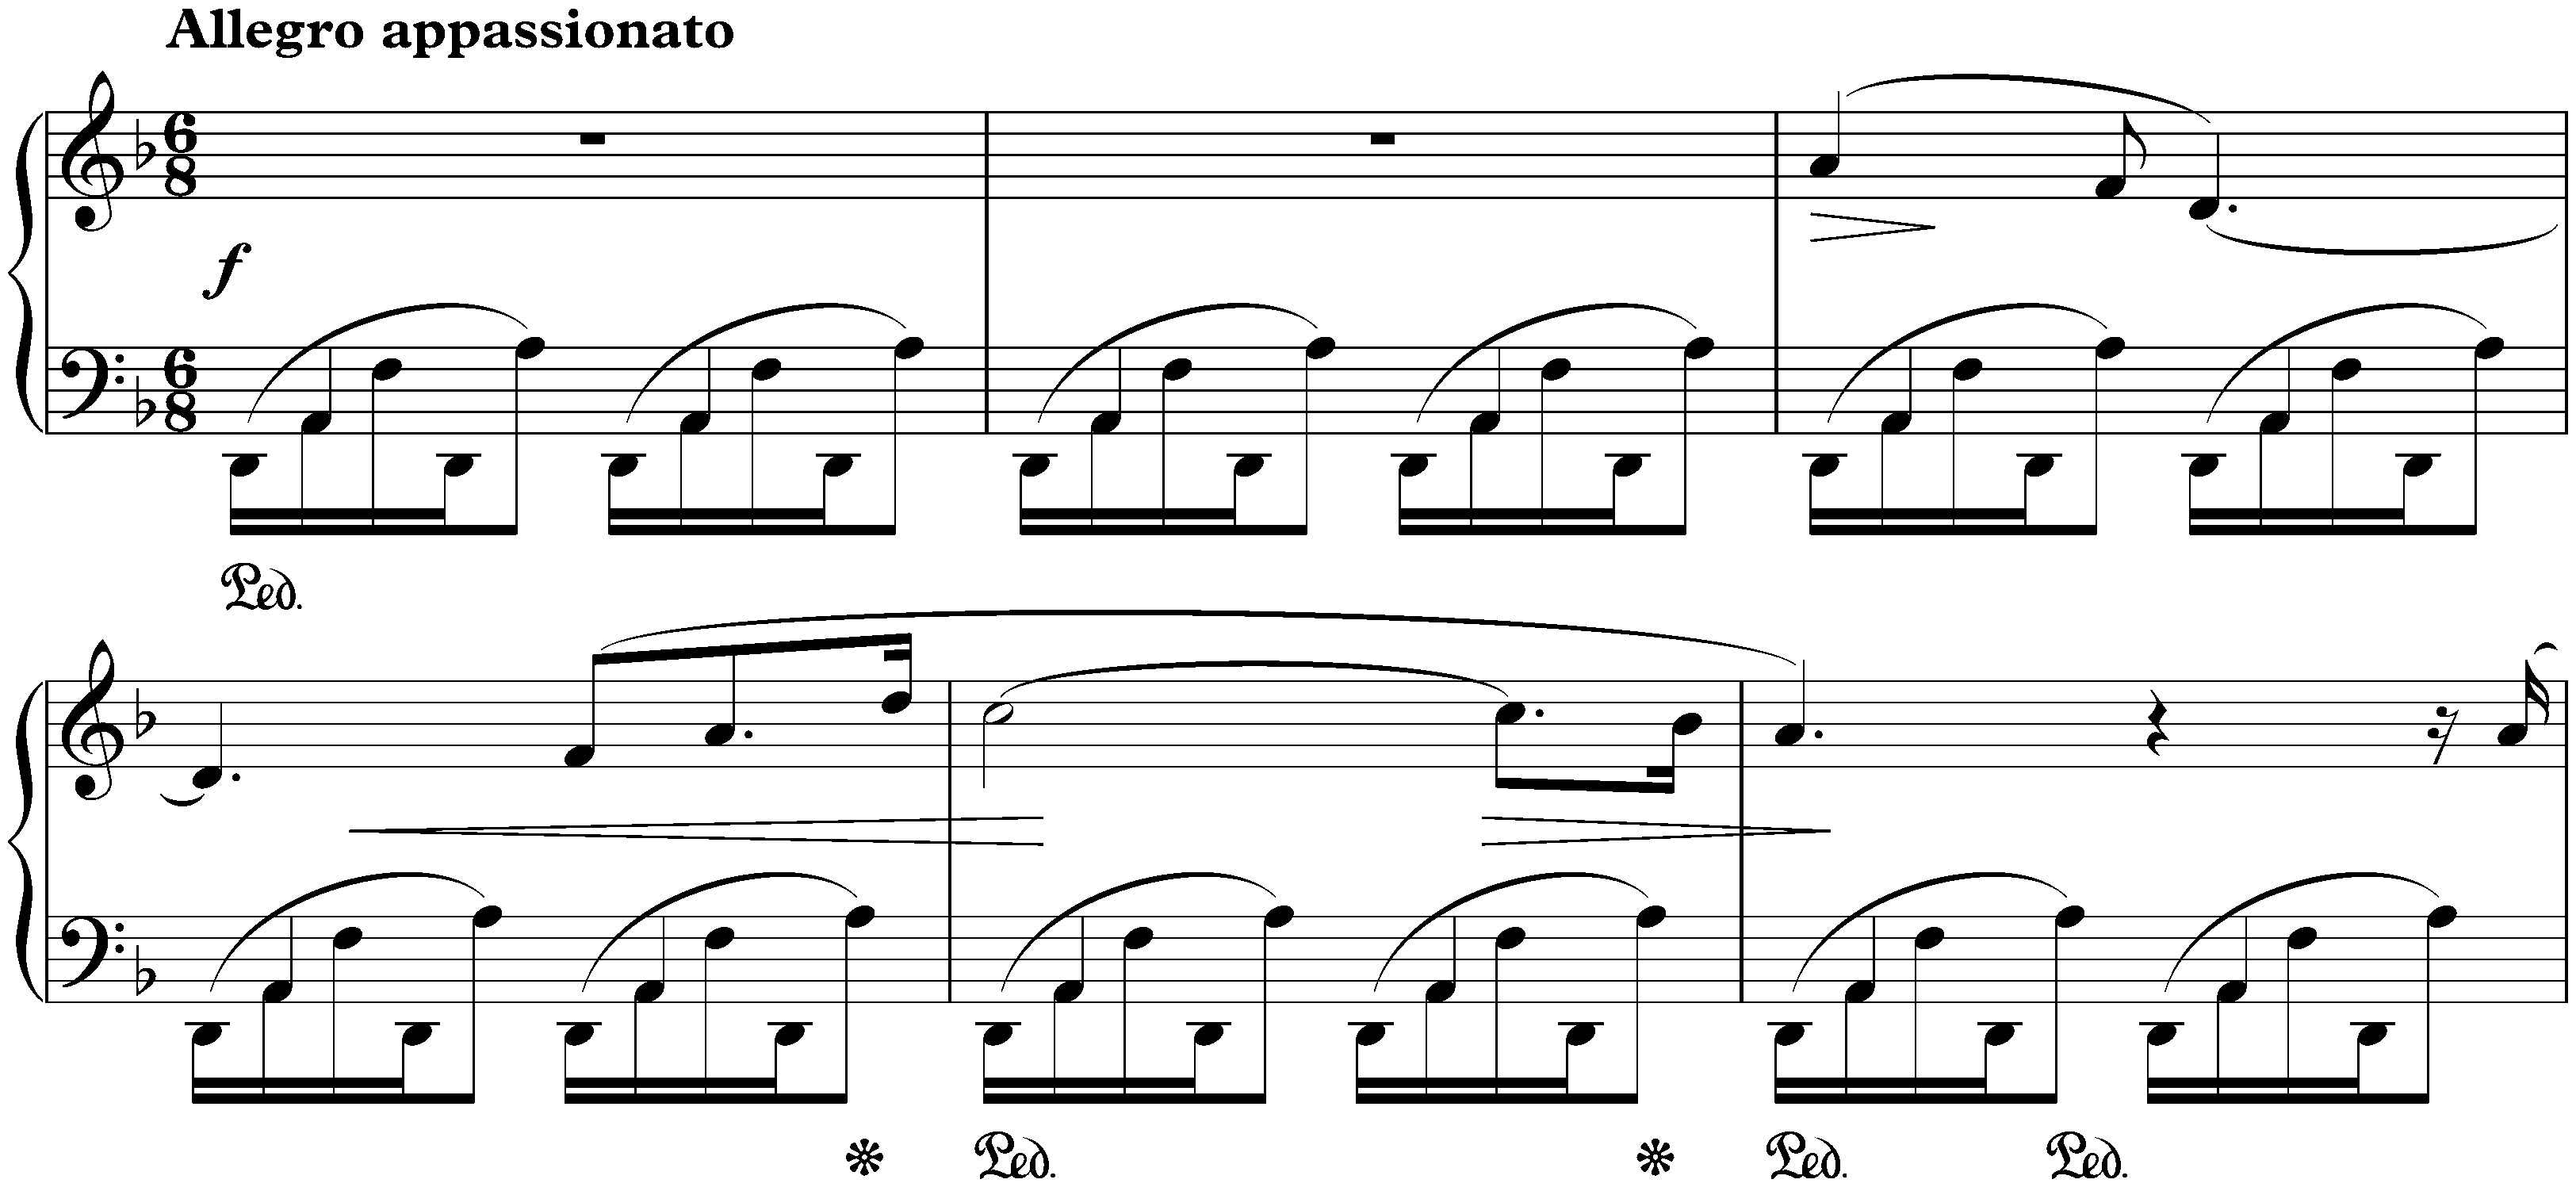 Twenty-four Préludes, op. 28; 24. D minor